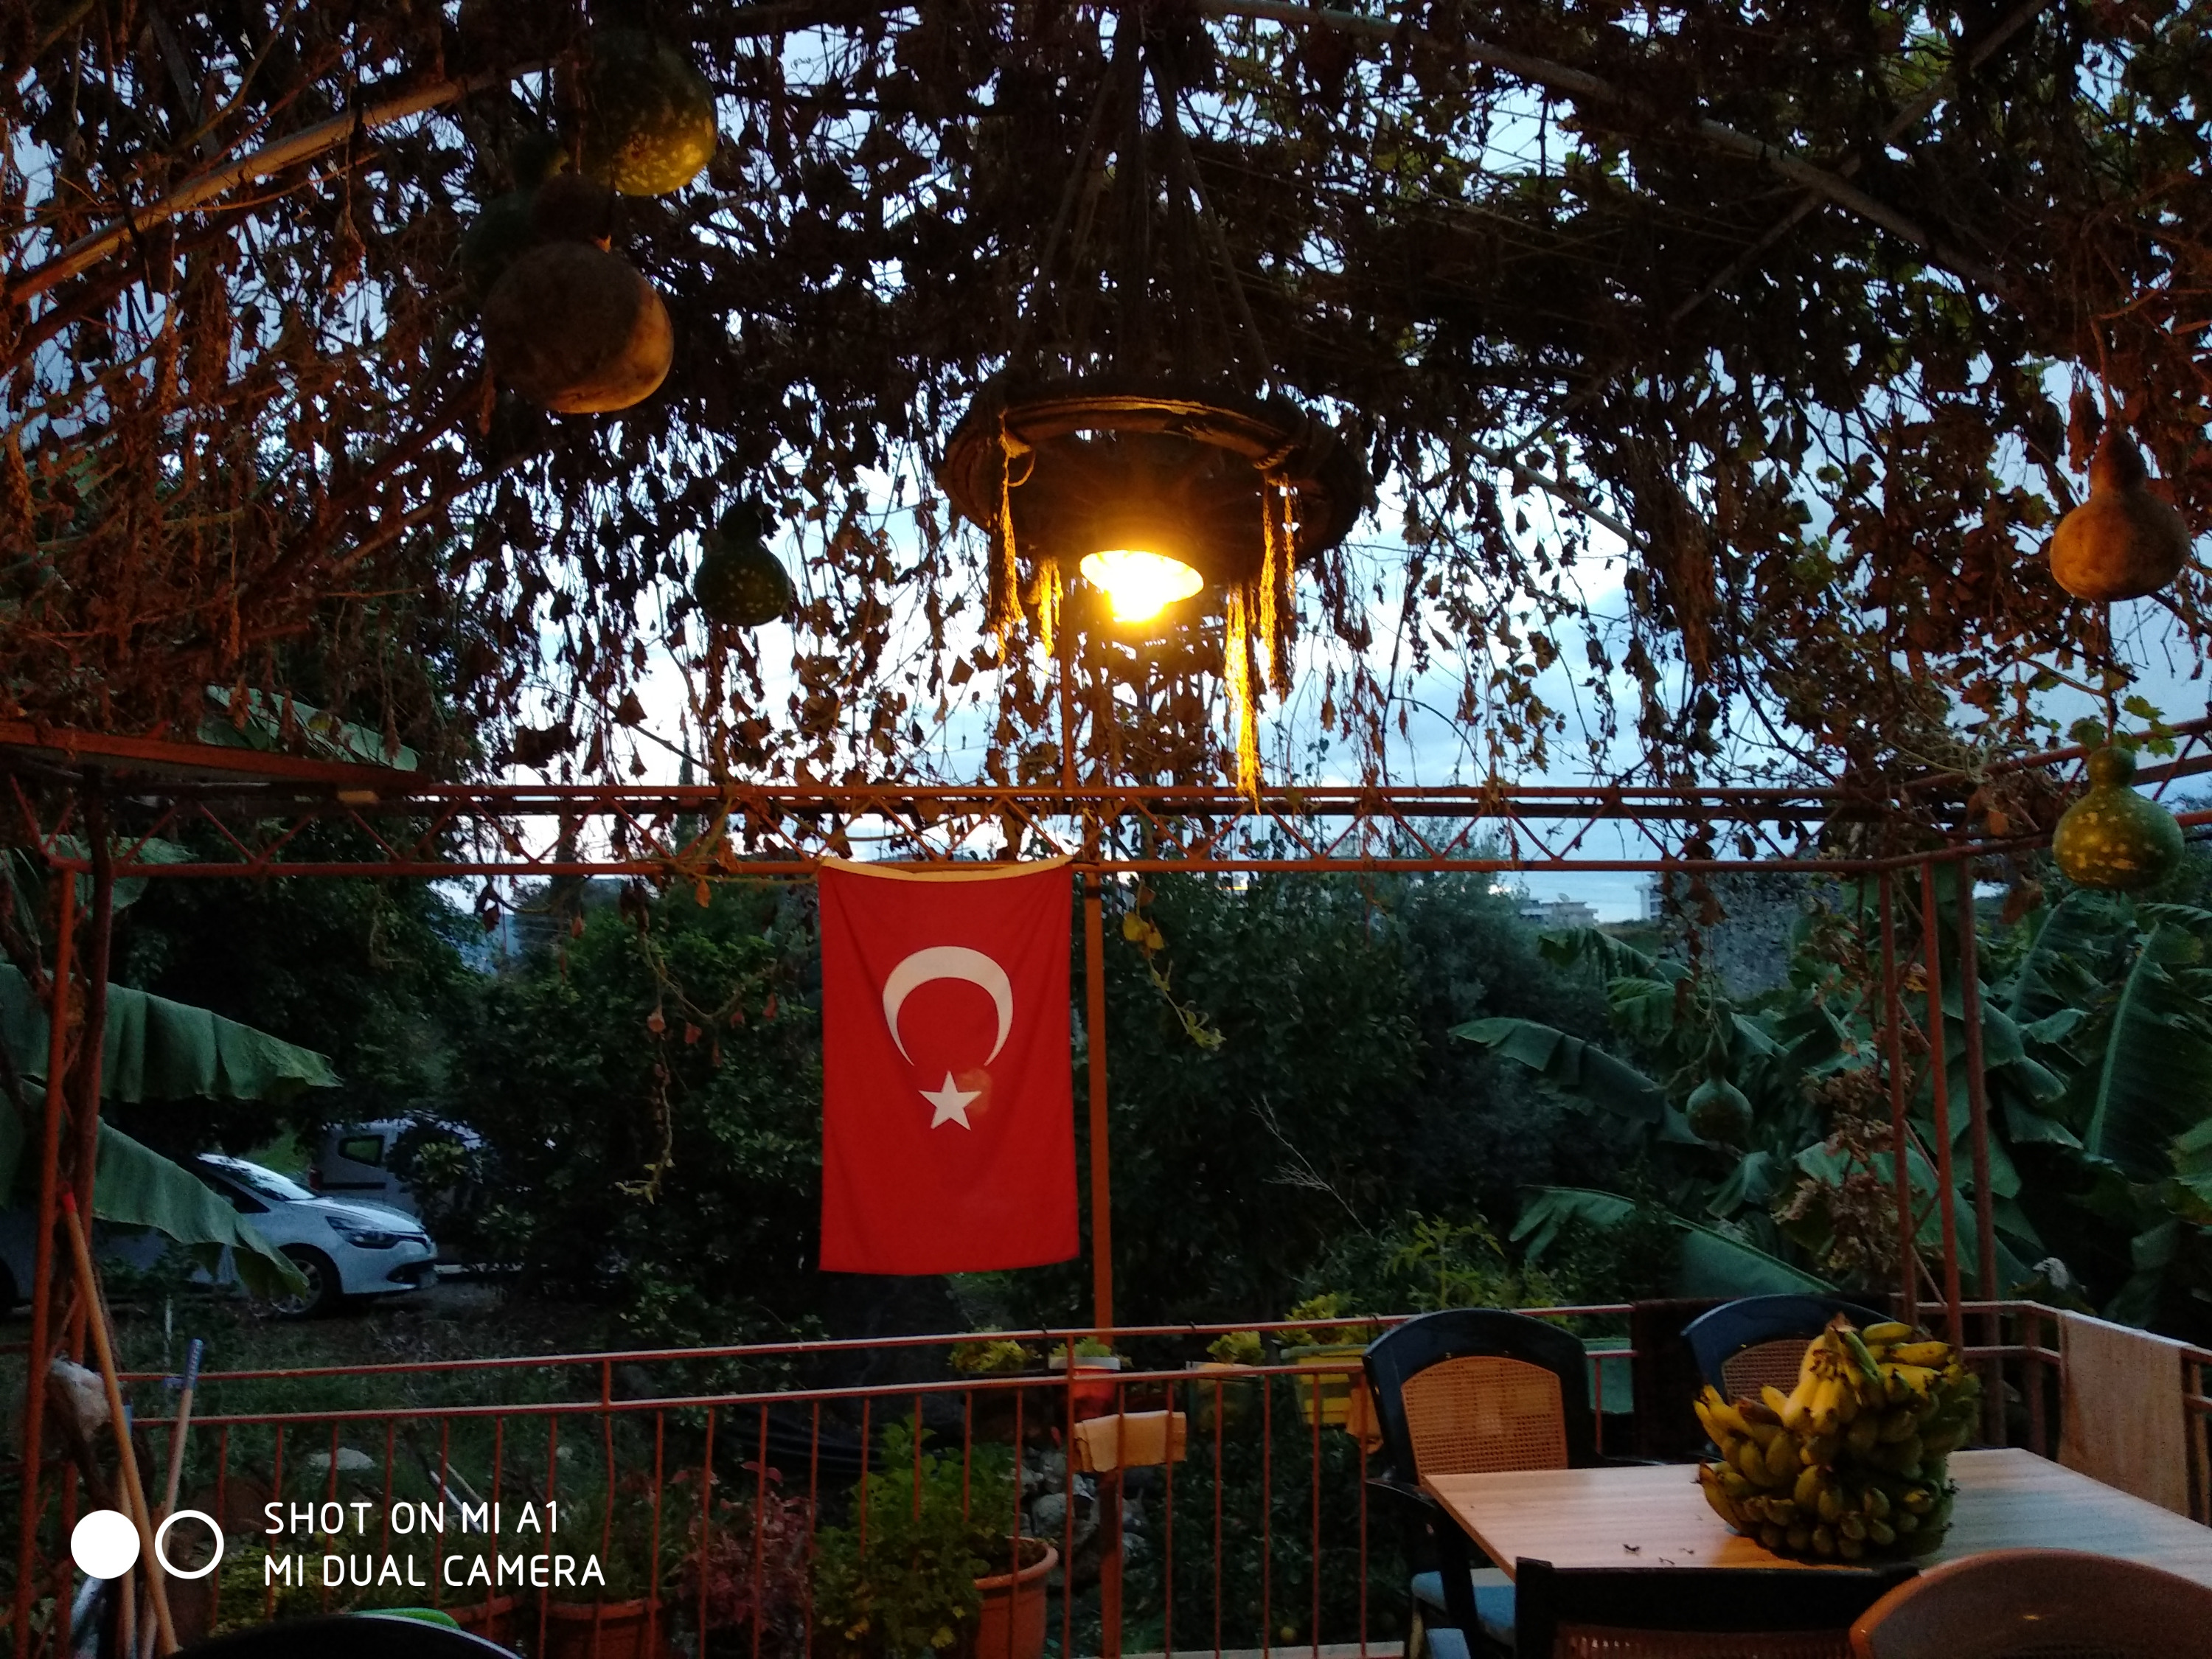 Повсюду бесчисленные кафе, которые владельцы украшают турецким флагом. Нравится им так, вот и всё